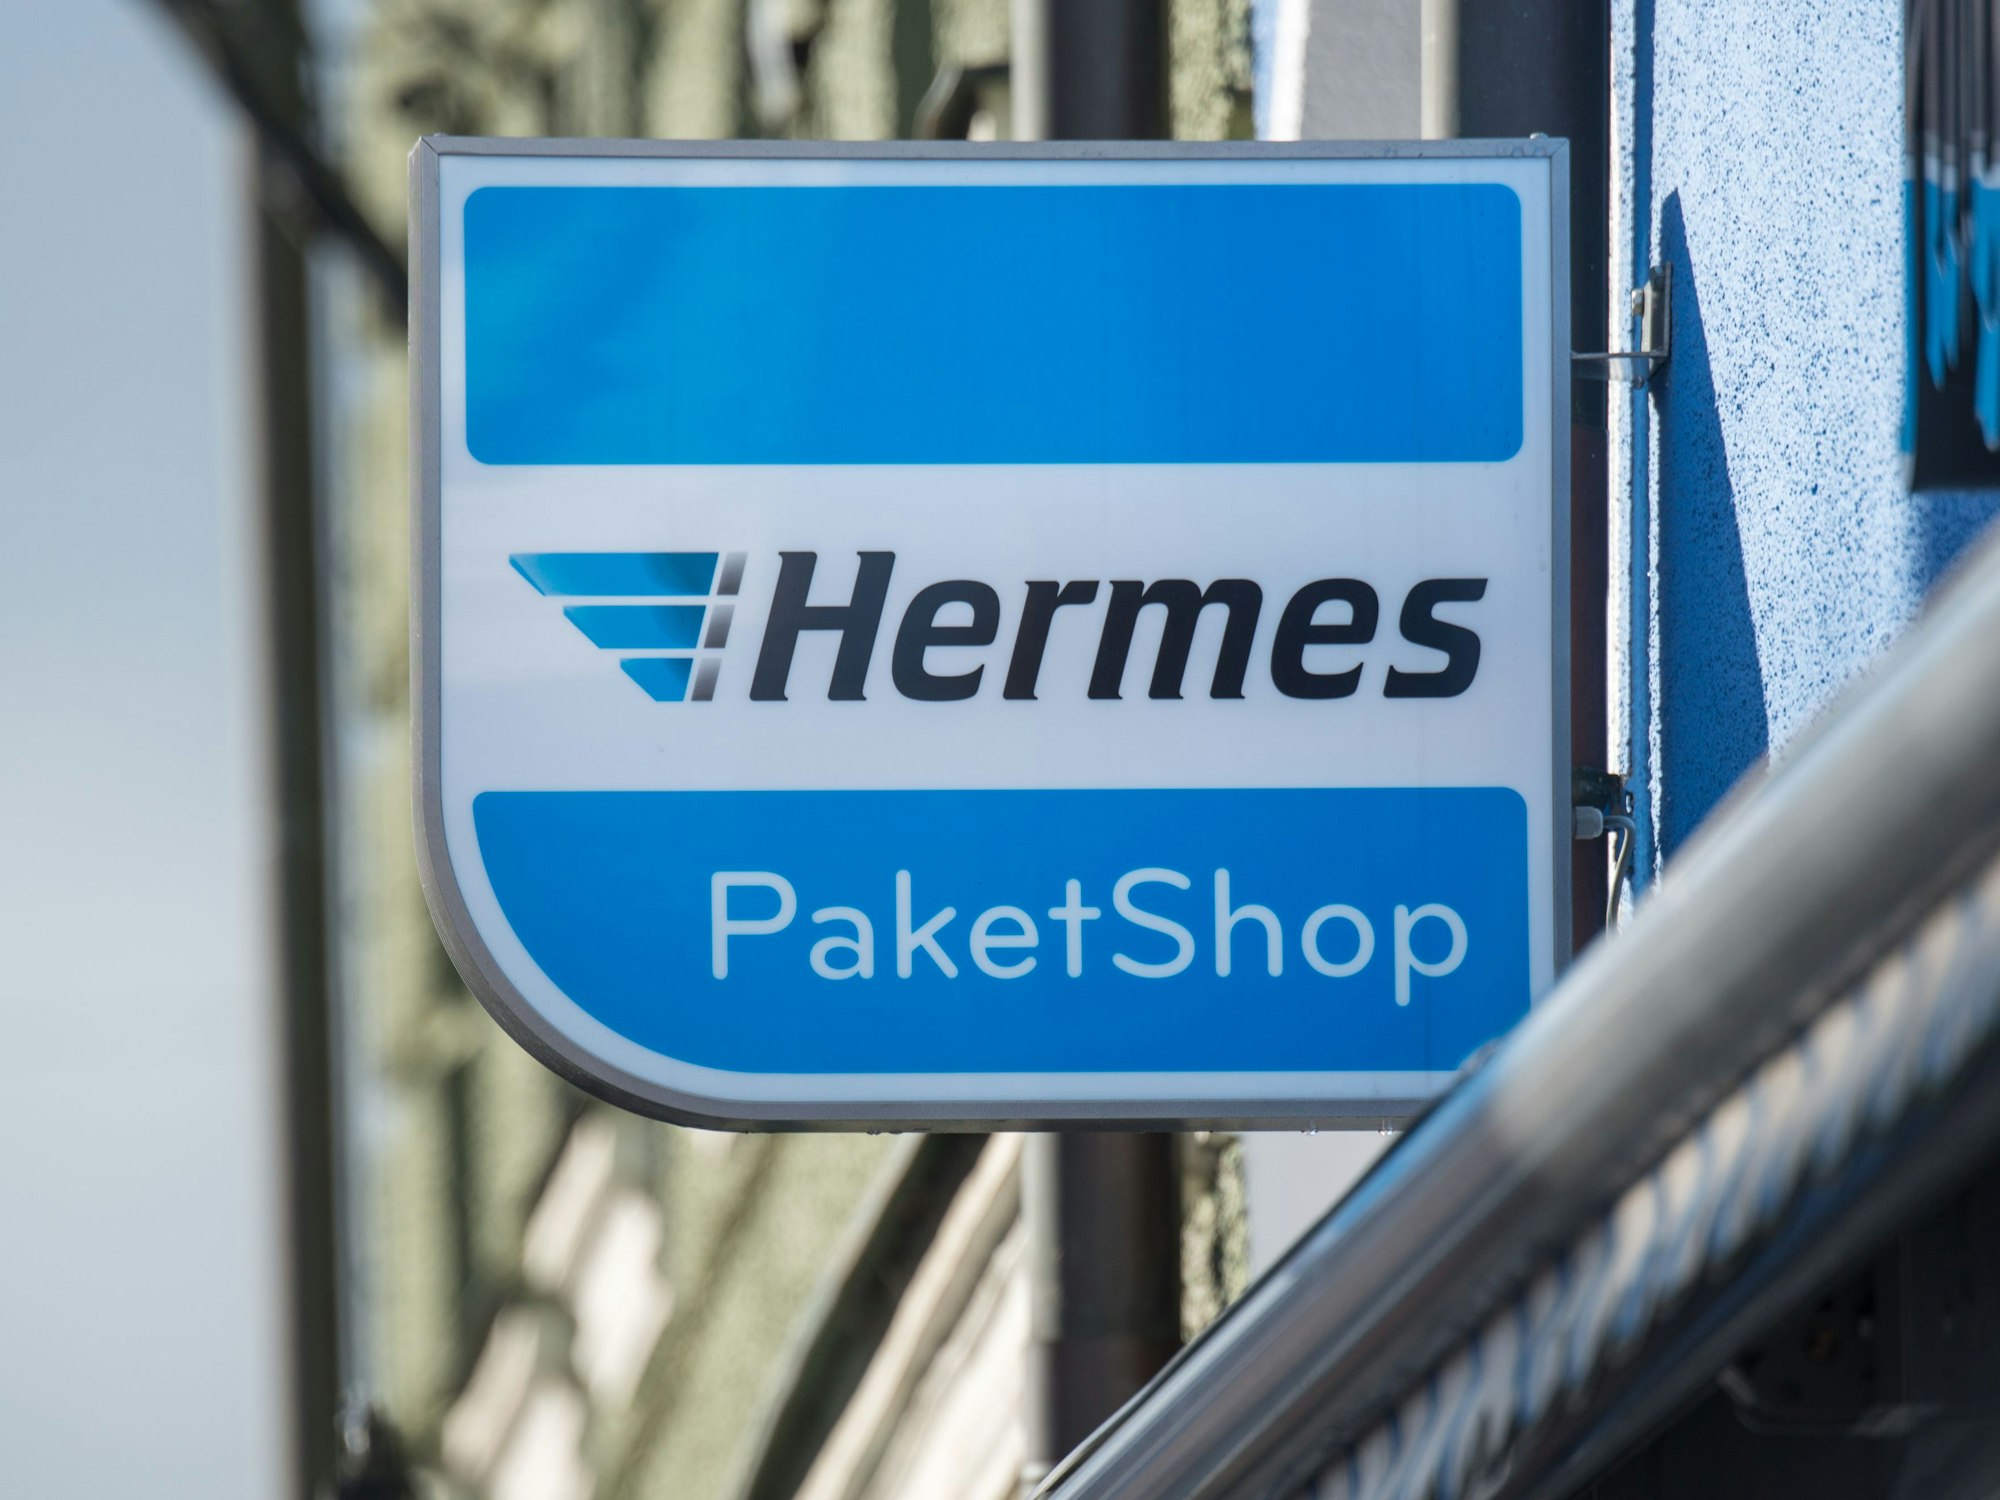 Das Schild eines Hermes-Paketshops